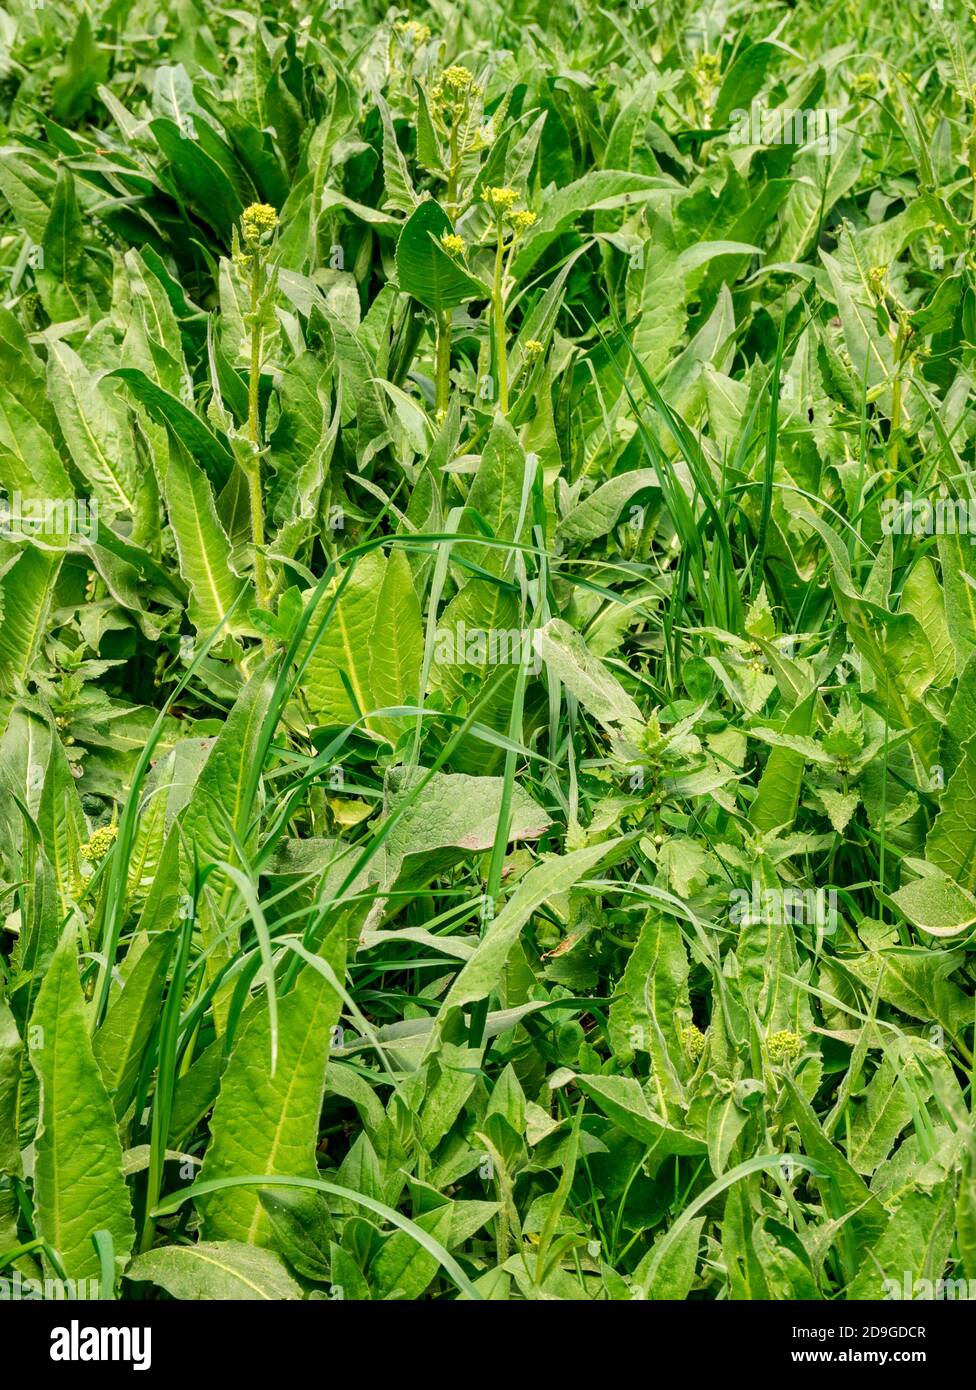 Turkish Rocket - Bunias orientalis densely overgrown foliage Stock Photo